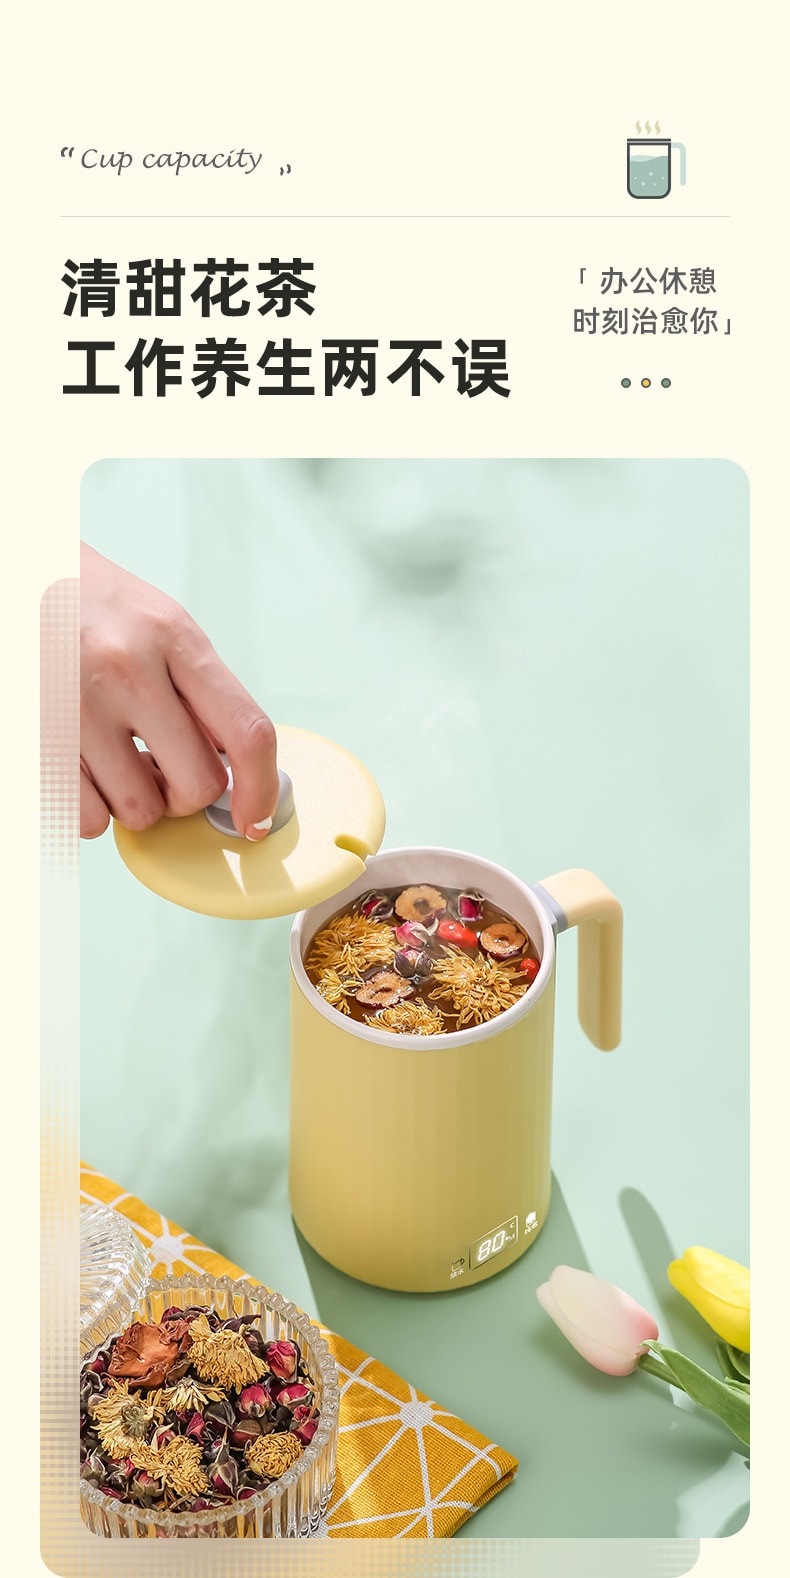 【中国直邮】柏意养生壶养生杯 带茶滤 智能电热杯炖煮杯烧水杯 450ml 黄色